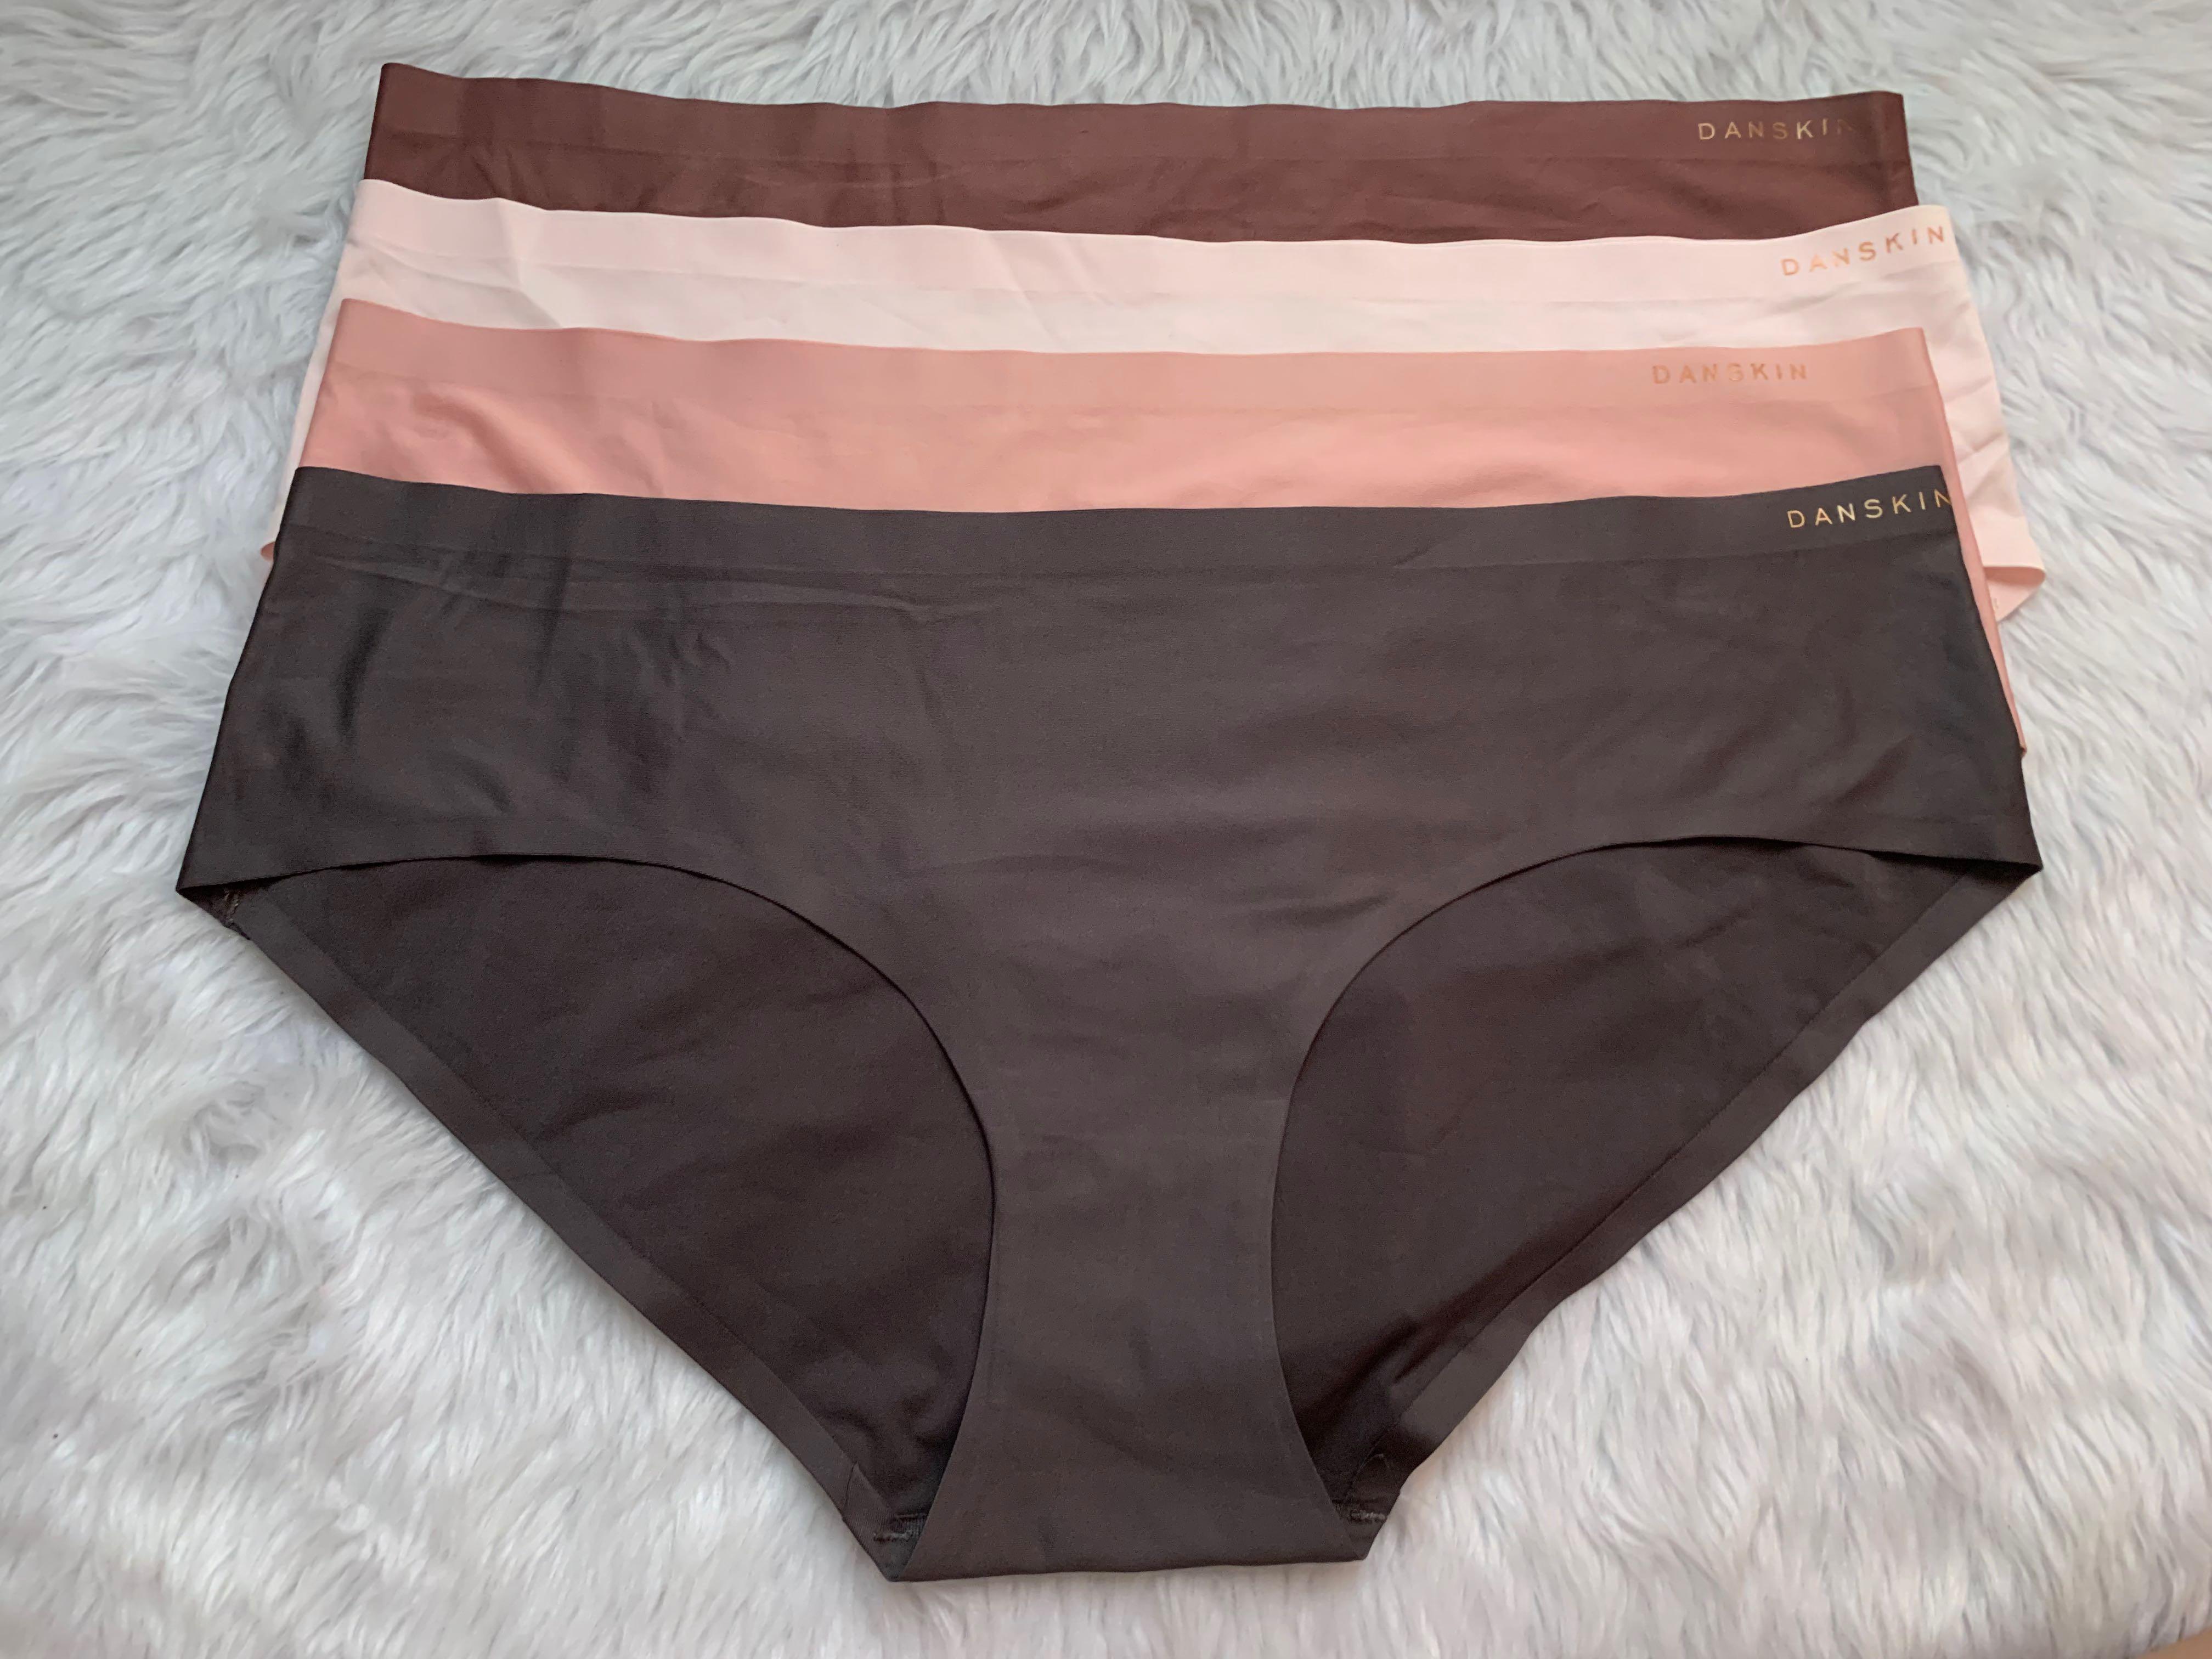 Danskin Panty set -XL, Women's Fashion, Undergarments & Loungewear on  Carousell